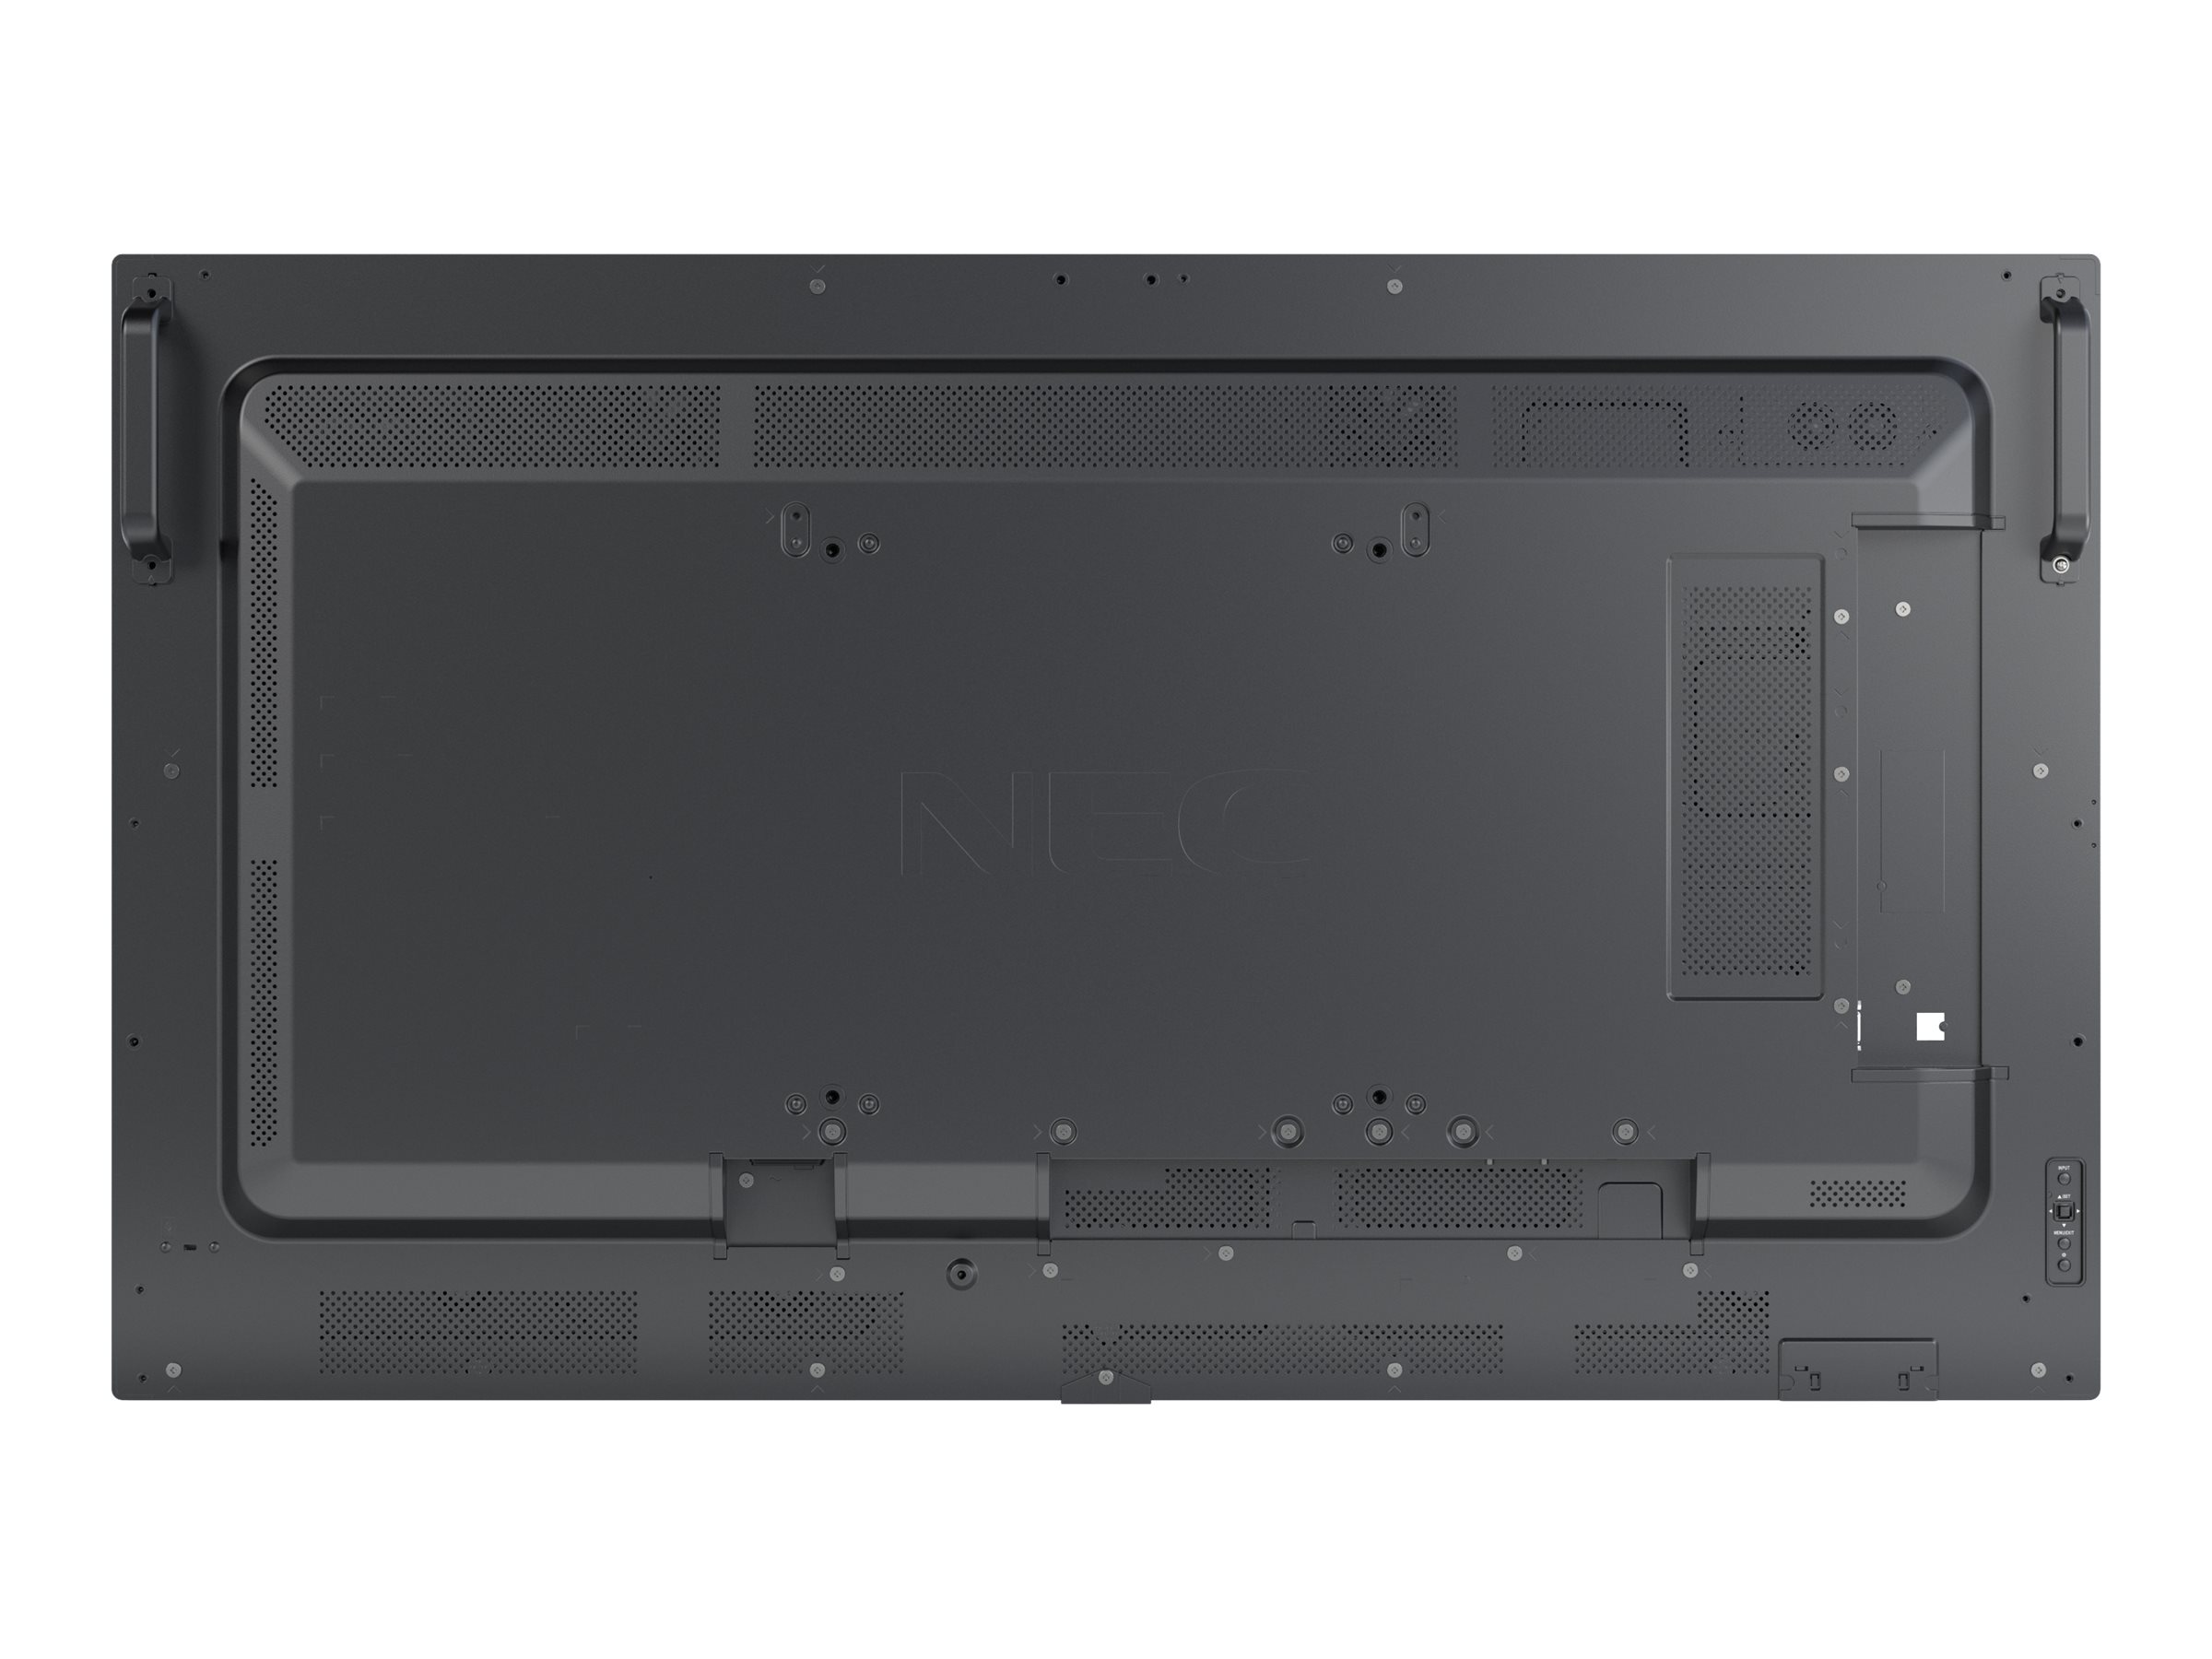 NEC MultiSync MA491 - Classe de diagonale 49" MA Series écran LCD rétro-éclairé par LED - signalisation numérique - 4K UHD (2160p) 3840 x 2160 - HDR - éclairage périphérique - noir - 60005050 - Écrans de signalisation numérique